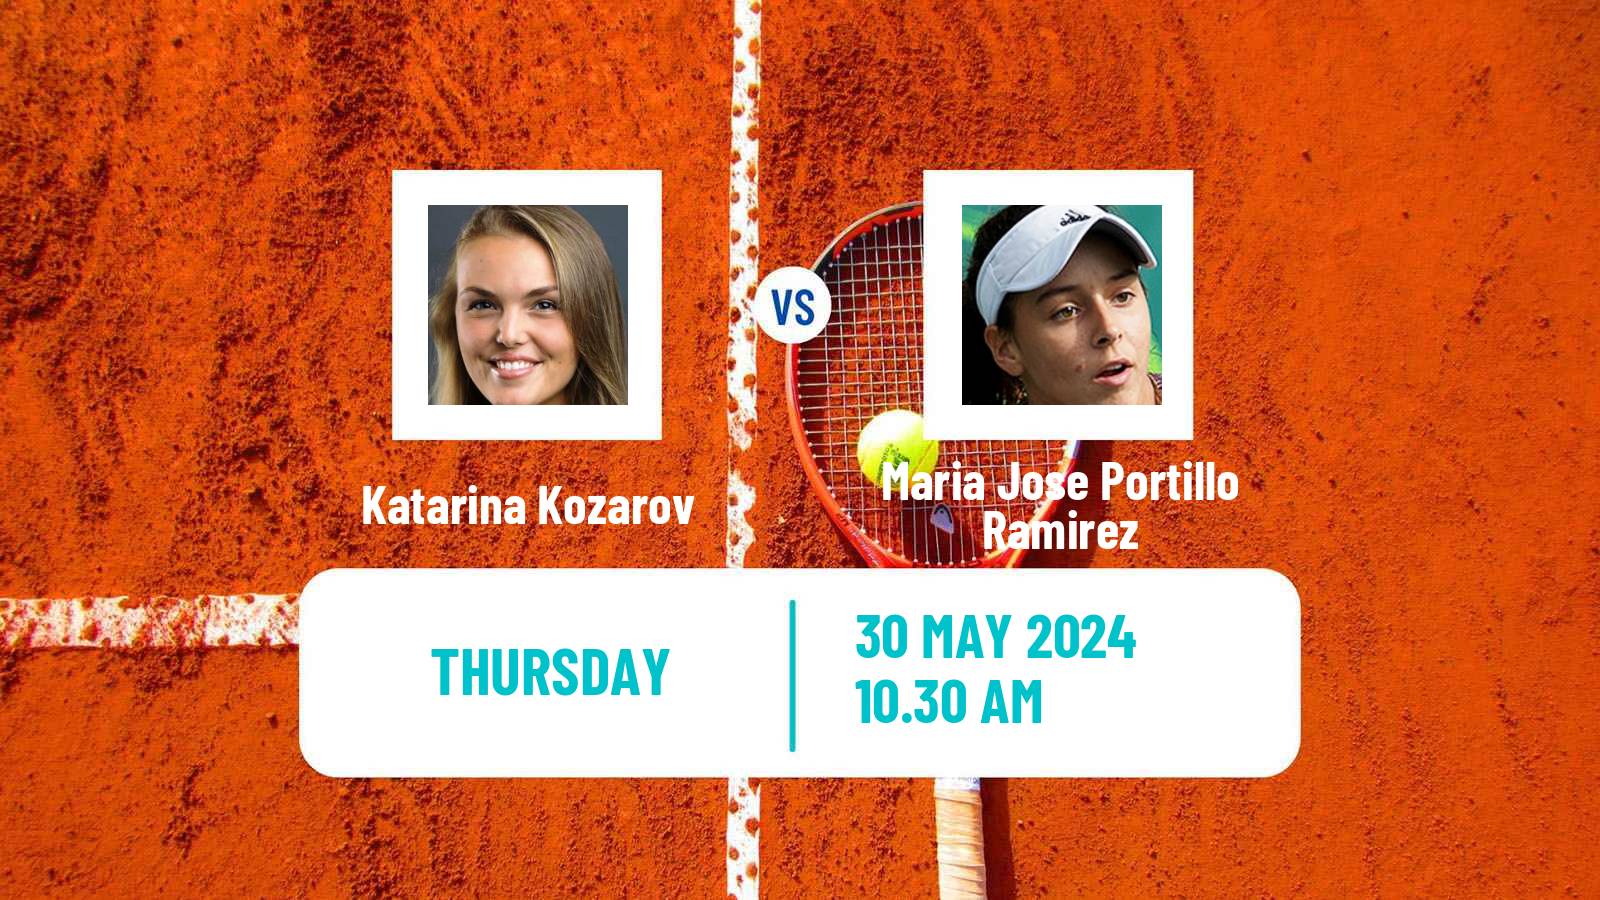 Tennis ITF W35 Santo Domingo 4 Women Katarina Kozarov - Maria Jose Portillo Ramirez